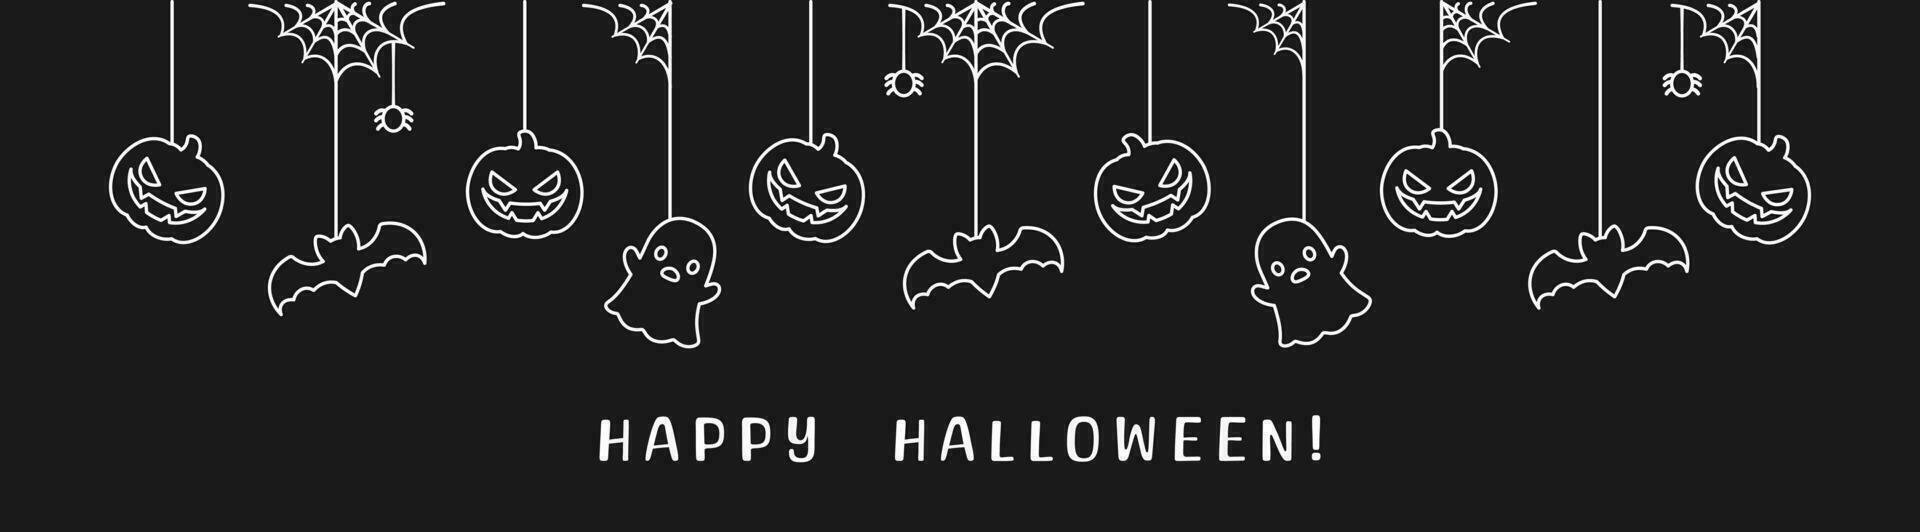 Lycklig halloween baner eller gräns med fladdermöss, Spindel webb, spöke och domkraft o lykta pumpor översikt klotter. hängande läskigt ornament dekoration vektor illustration, lura eller behandla fest inbjudan